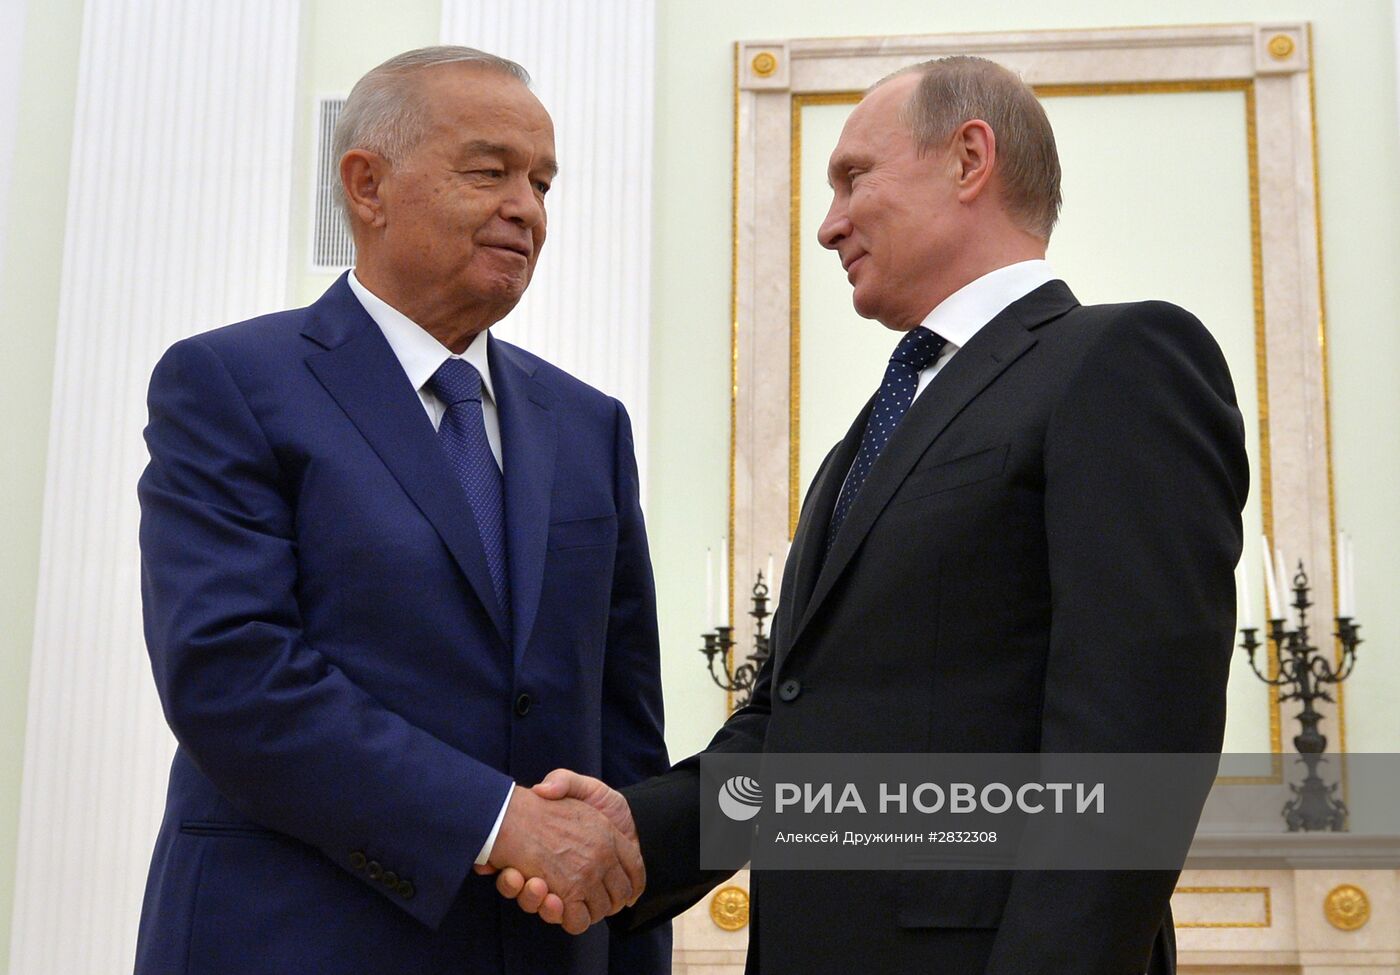 Встреча президента РФ В. Путина с президентом Узбекистана И. Каримовым